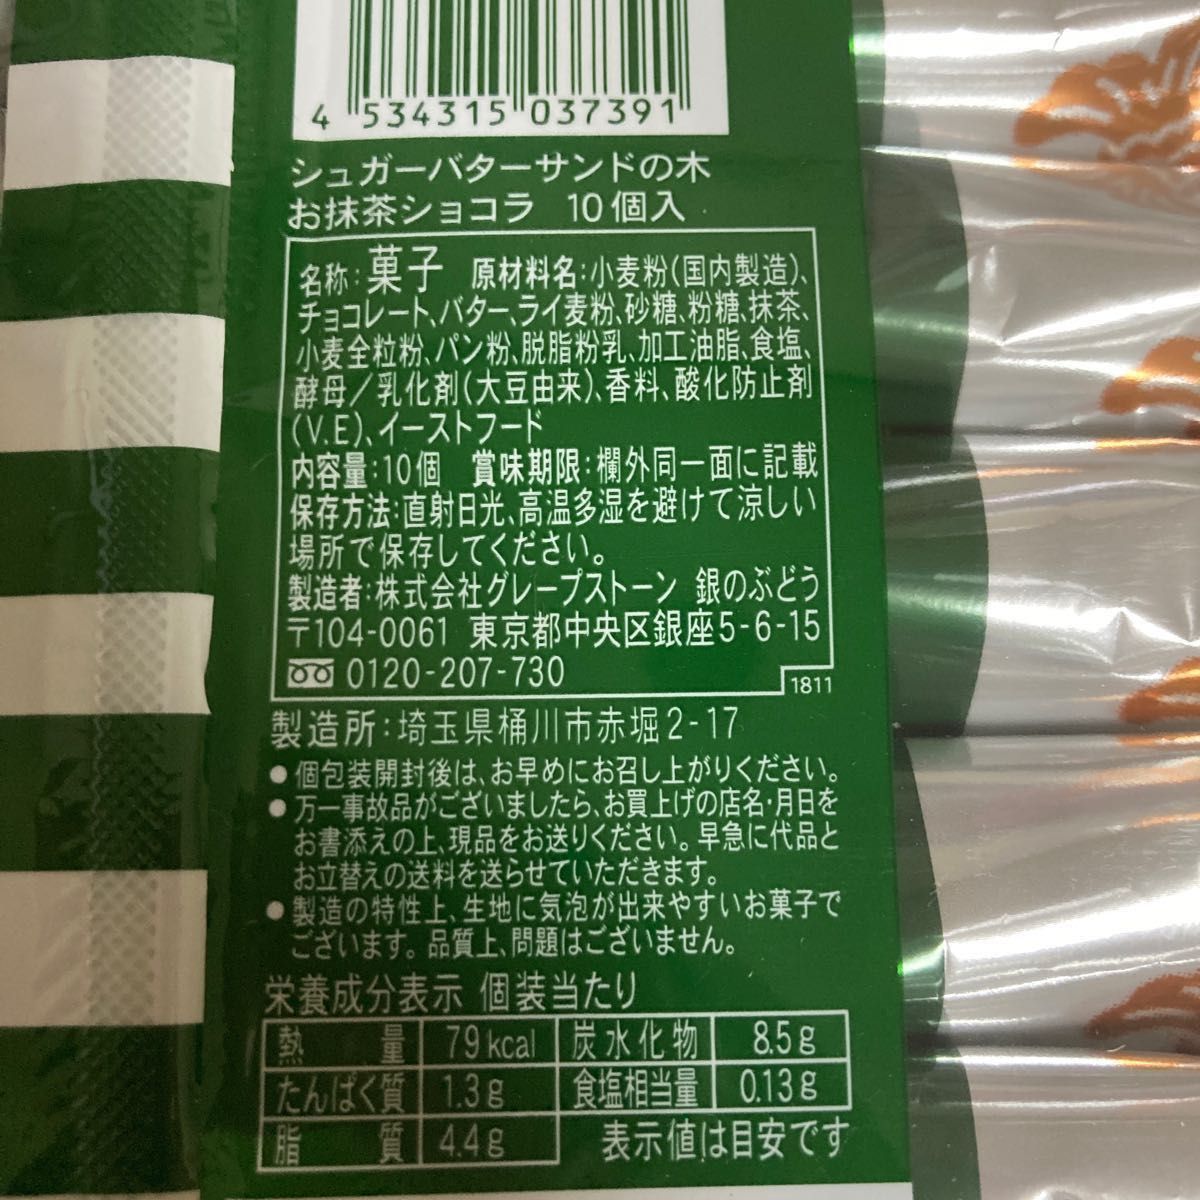 シュガーバターサンドの木 お抹茶ショコラ 10個入 【名古屋地区限定】×4